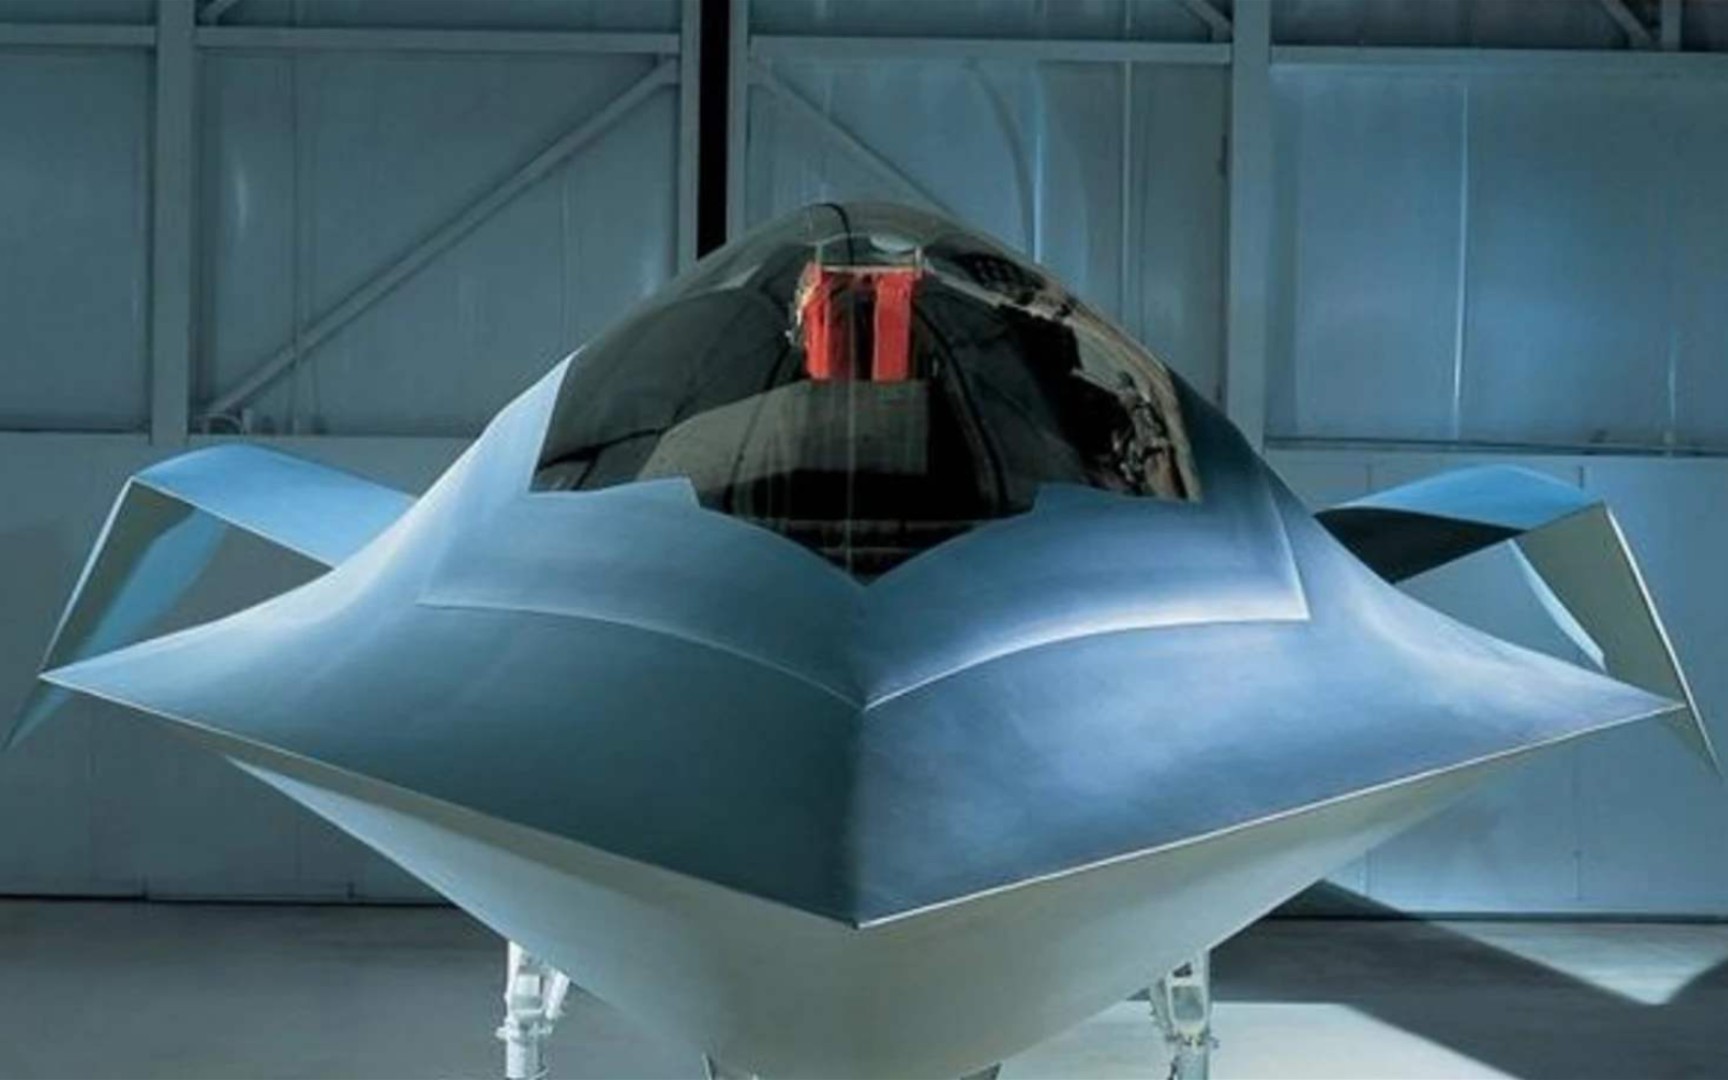 来自外星的“黑科技”？可完全不被雷达发现的美军YF-118G捕食鸟。比F-22更先进，迄今只对外展示一次被封存！